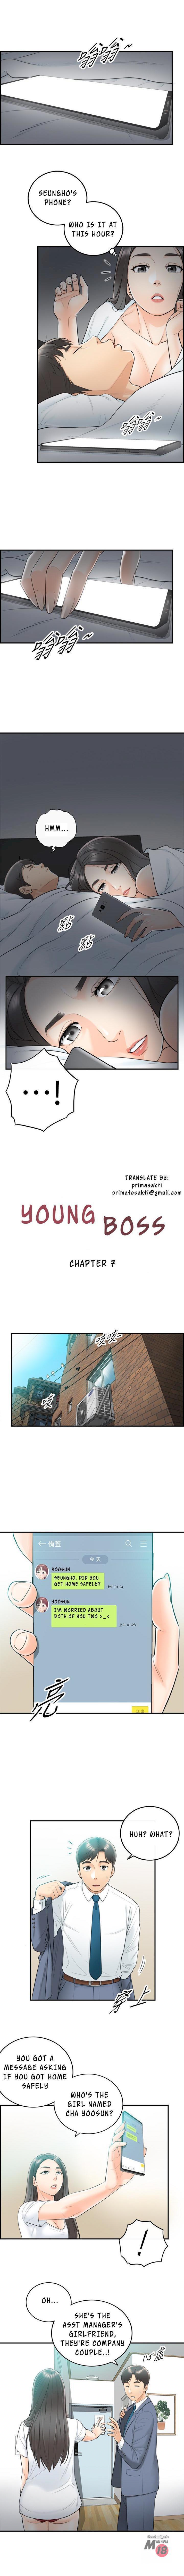 Young Boss Manhwa 01-73 58